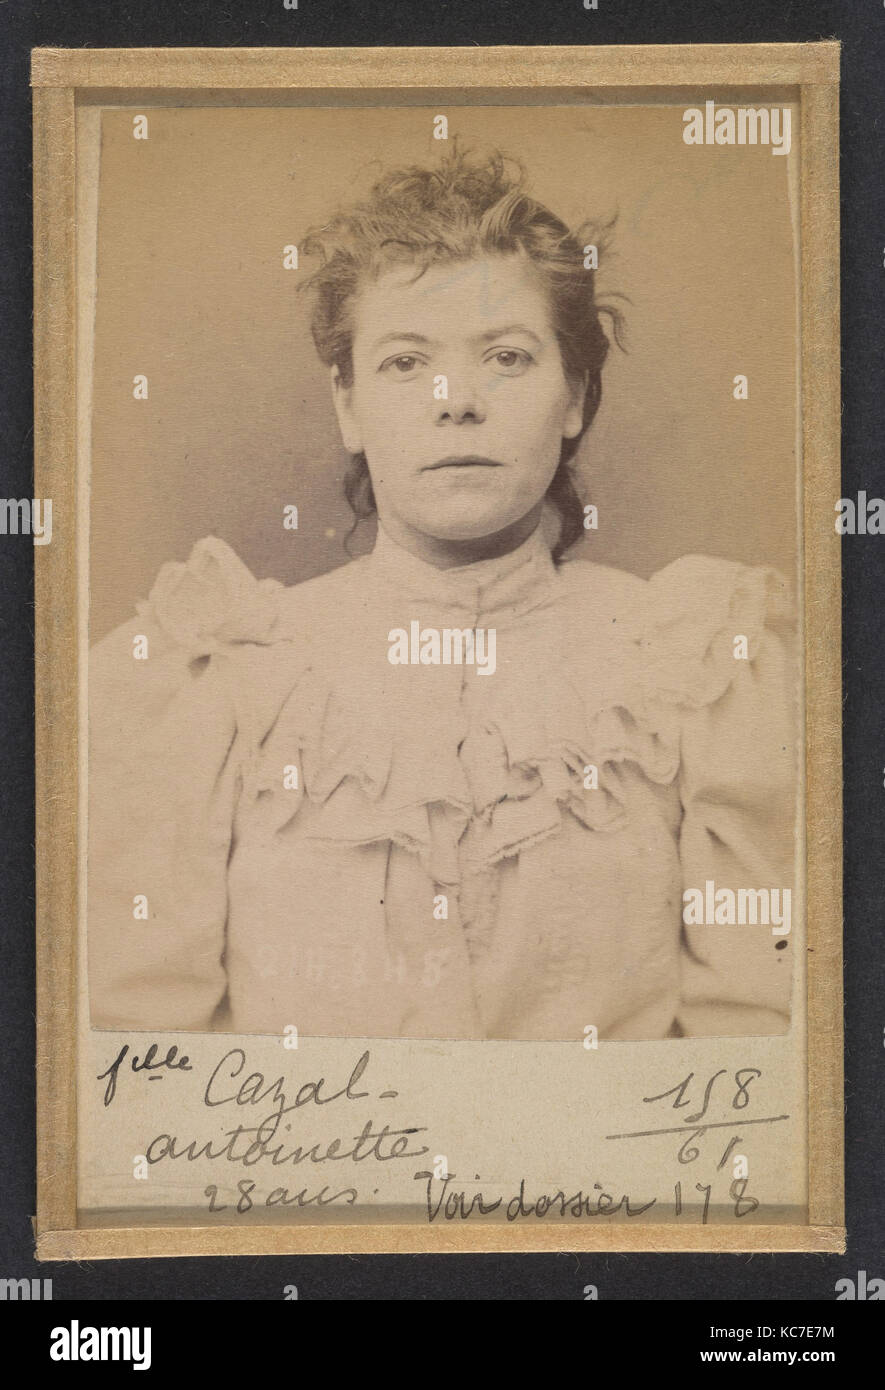 Cazal. Antoinette. 28 ans, née à Salgouz (Cantal). Couturière. Anarchiste. 28/2/94., Alphonse Bertillon, 1894 Stock Photo